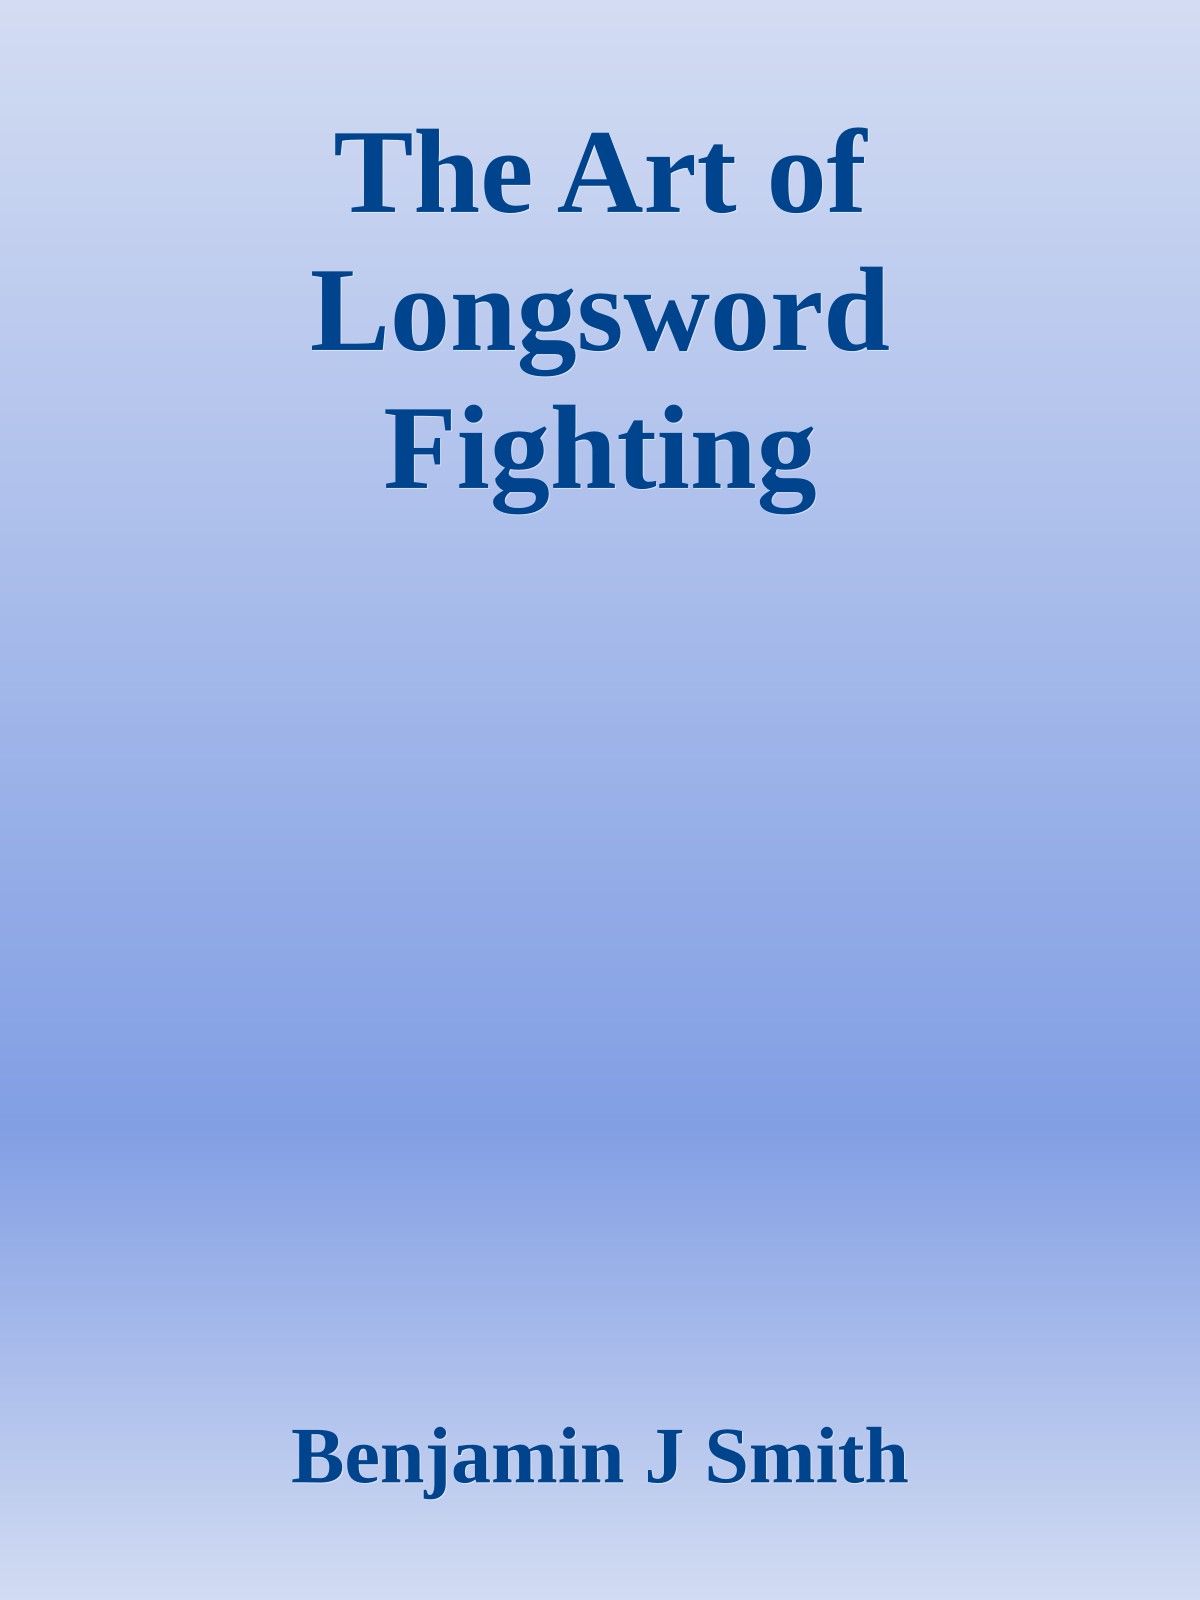 The Art of Longsword Fighting